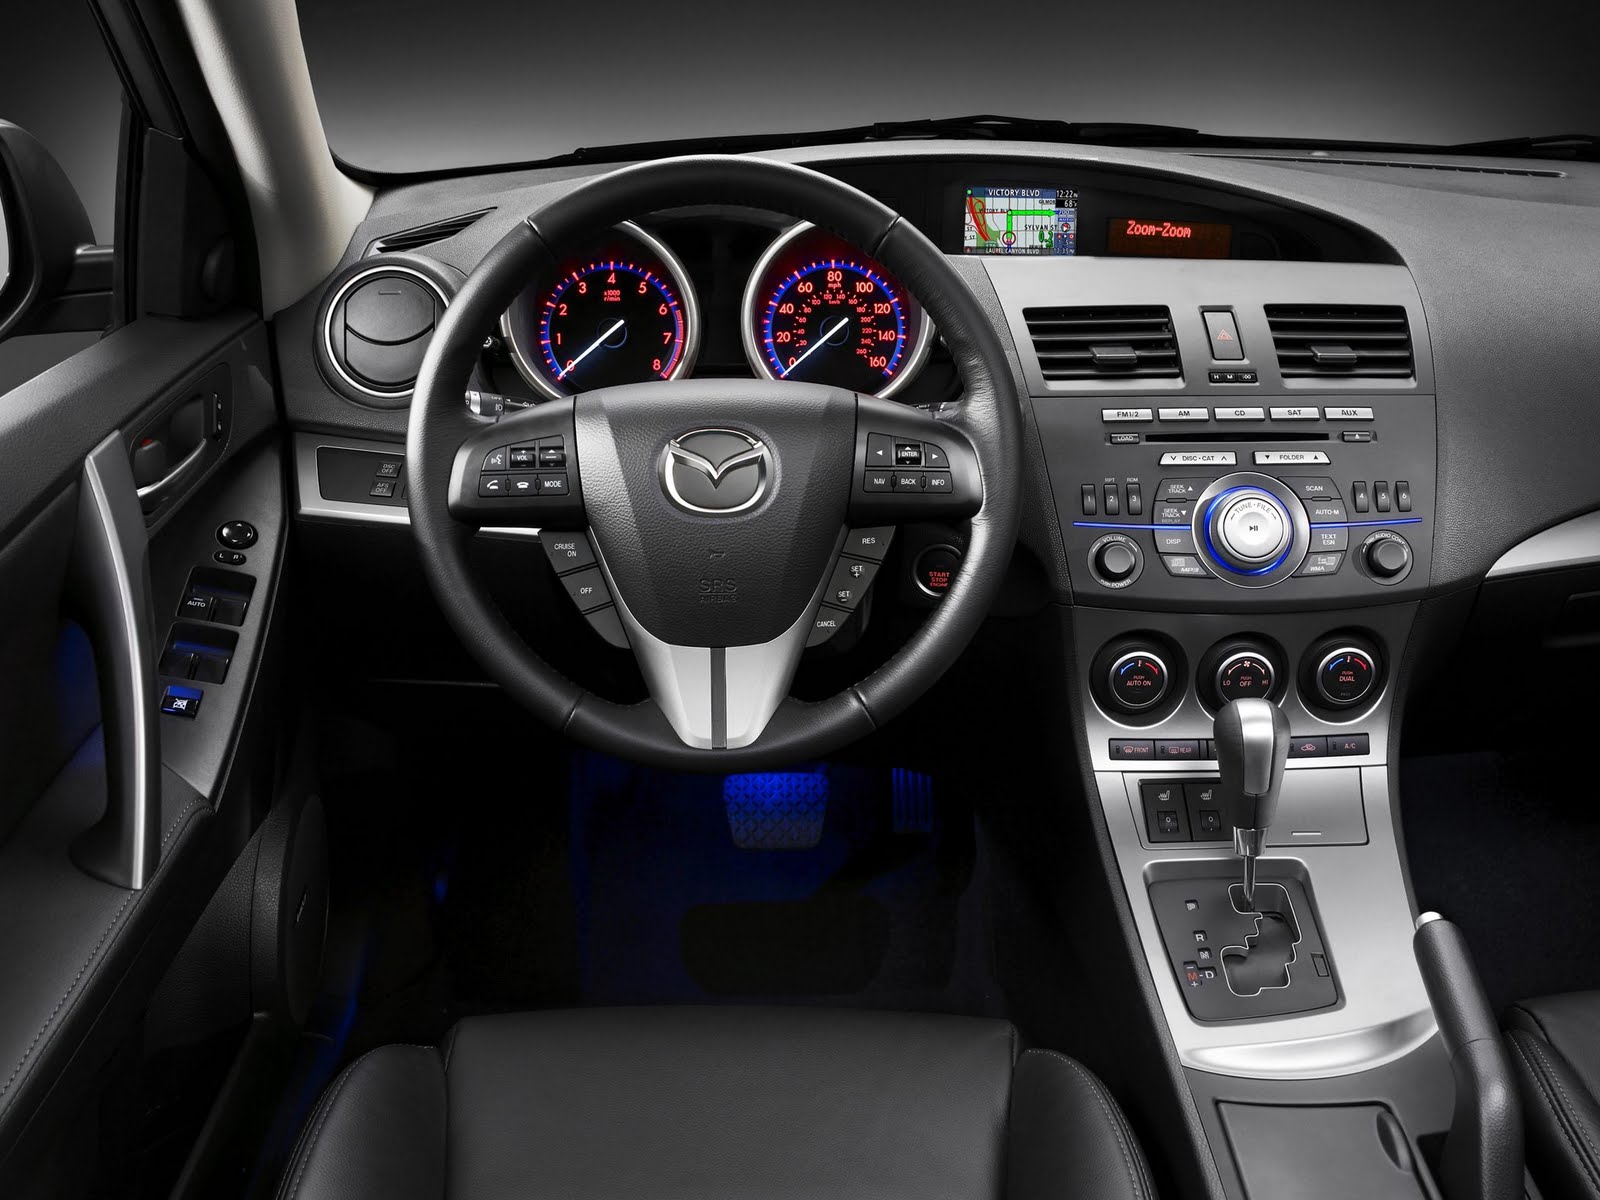 2010 Mazda3 Interior Auto Today